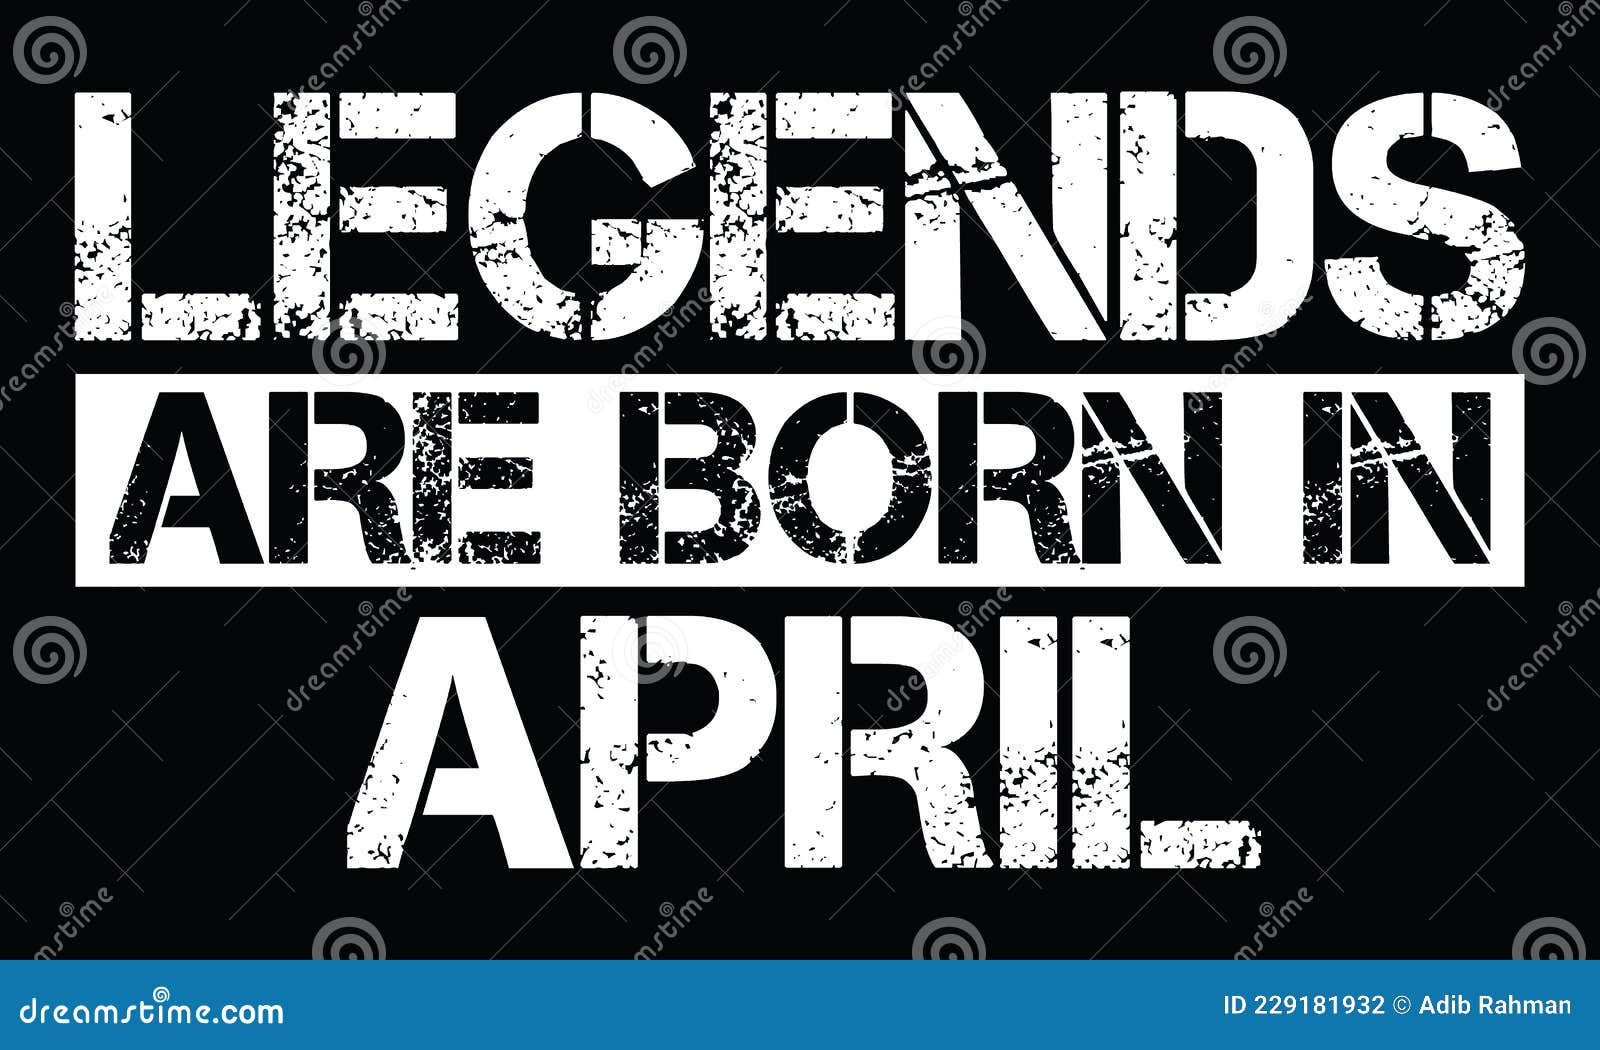 legends are born in april